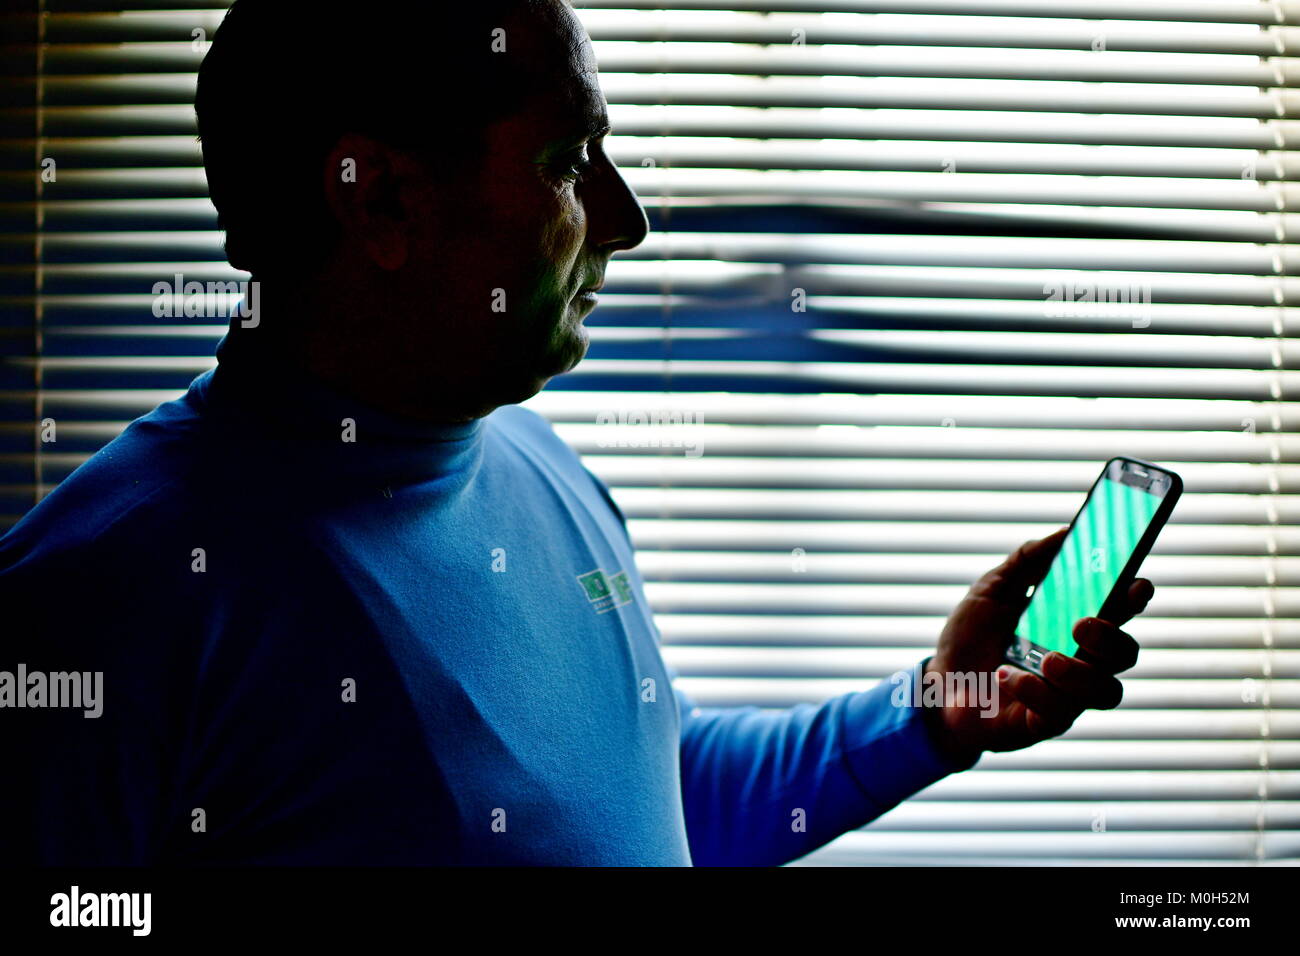 Schermo verde pronto android e uomo contro la visualizzazione finestra striato di ombra e luce Foto Stock